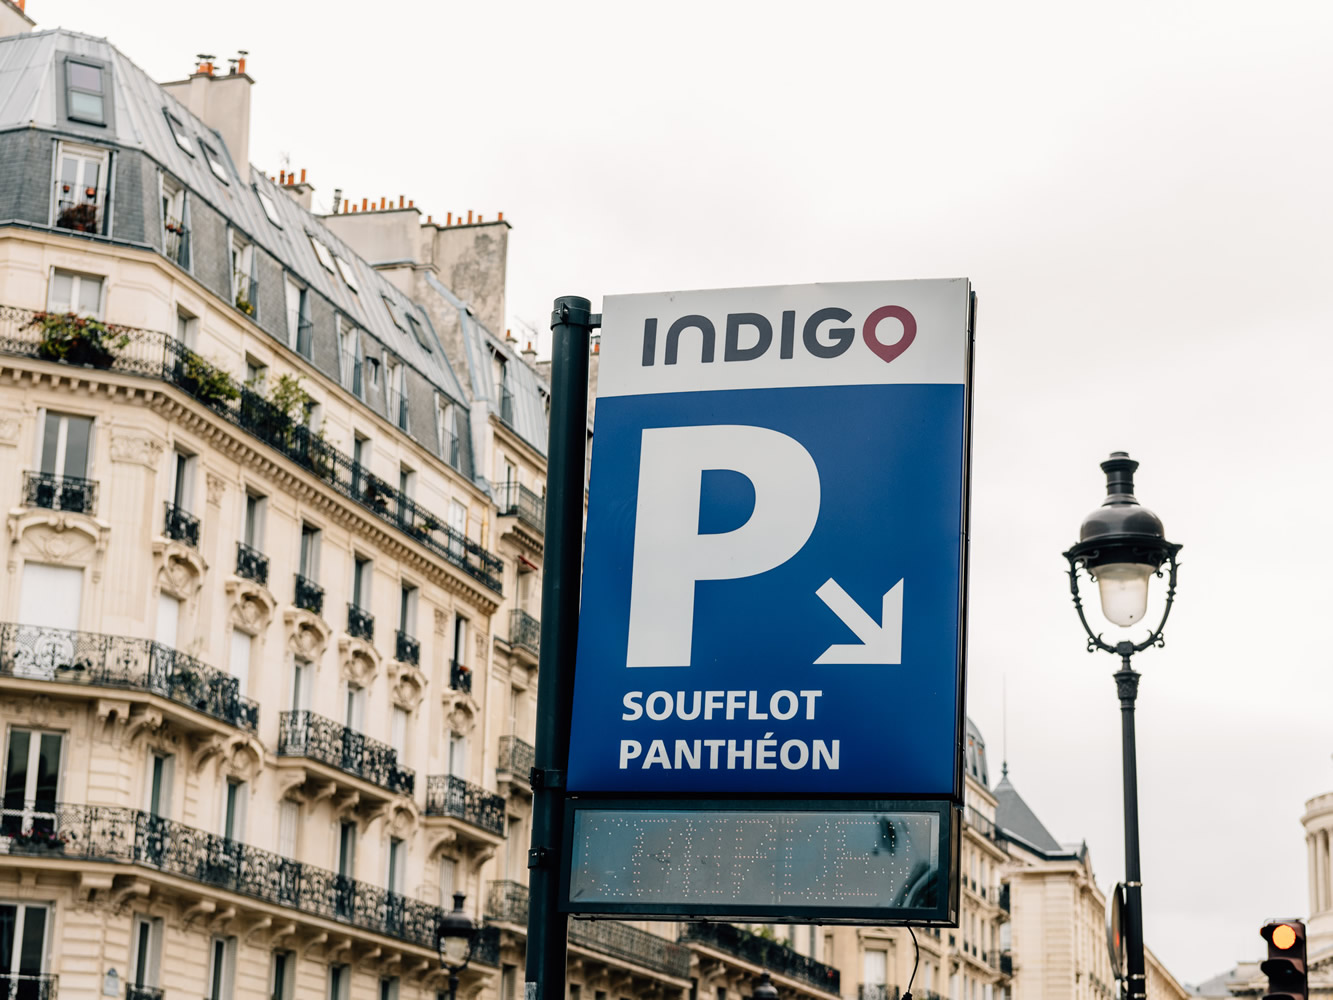 Free car parking in Paris